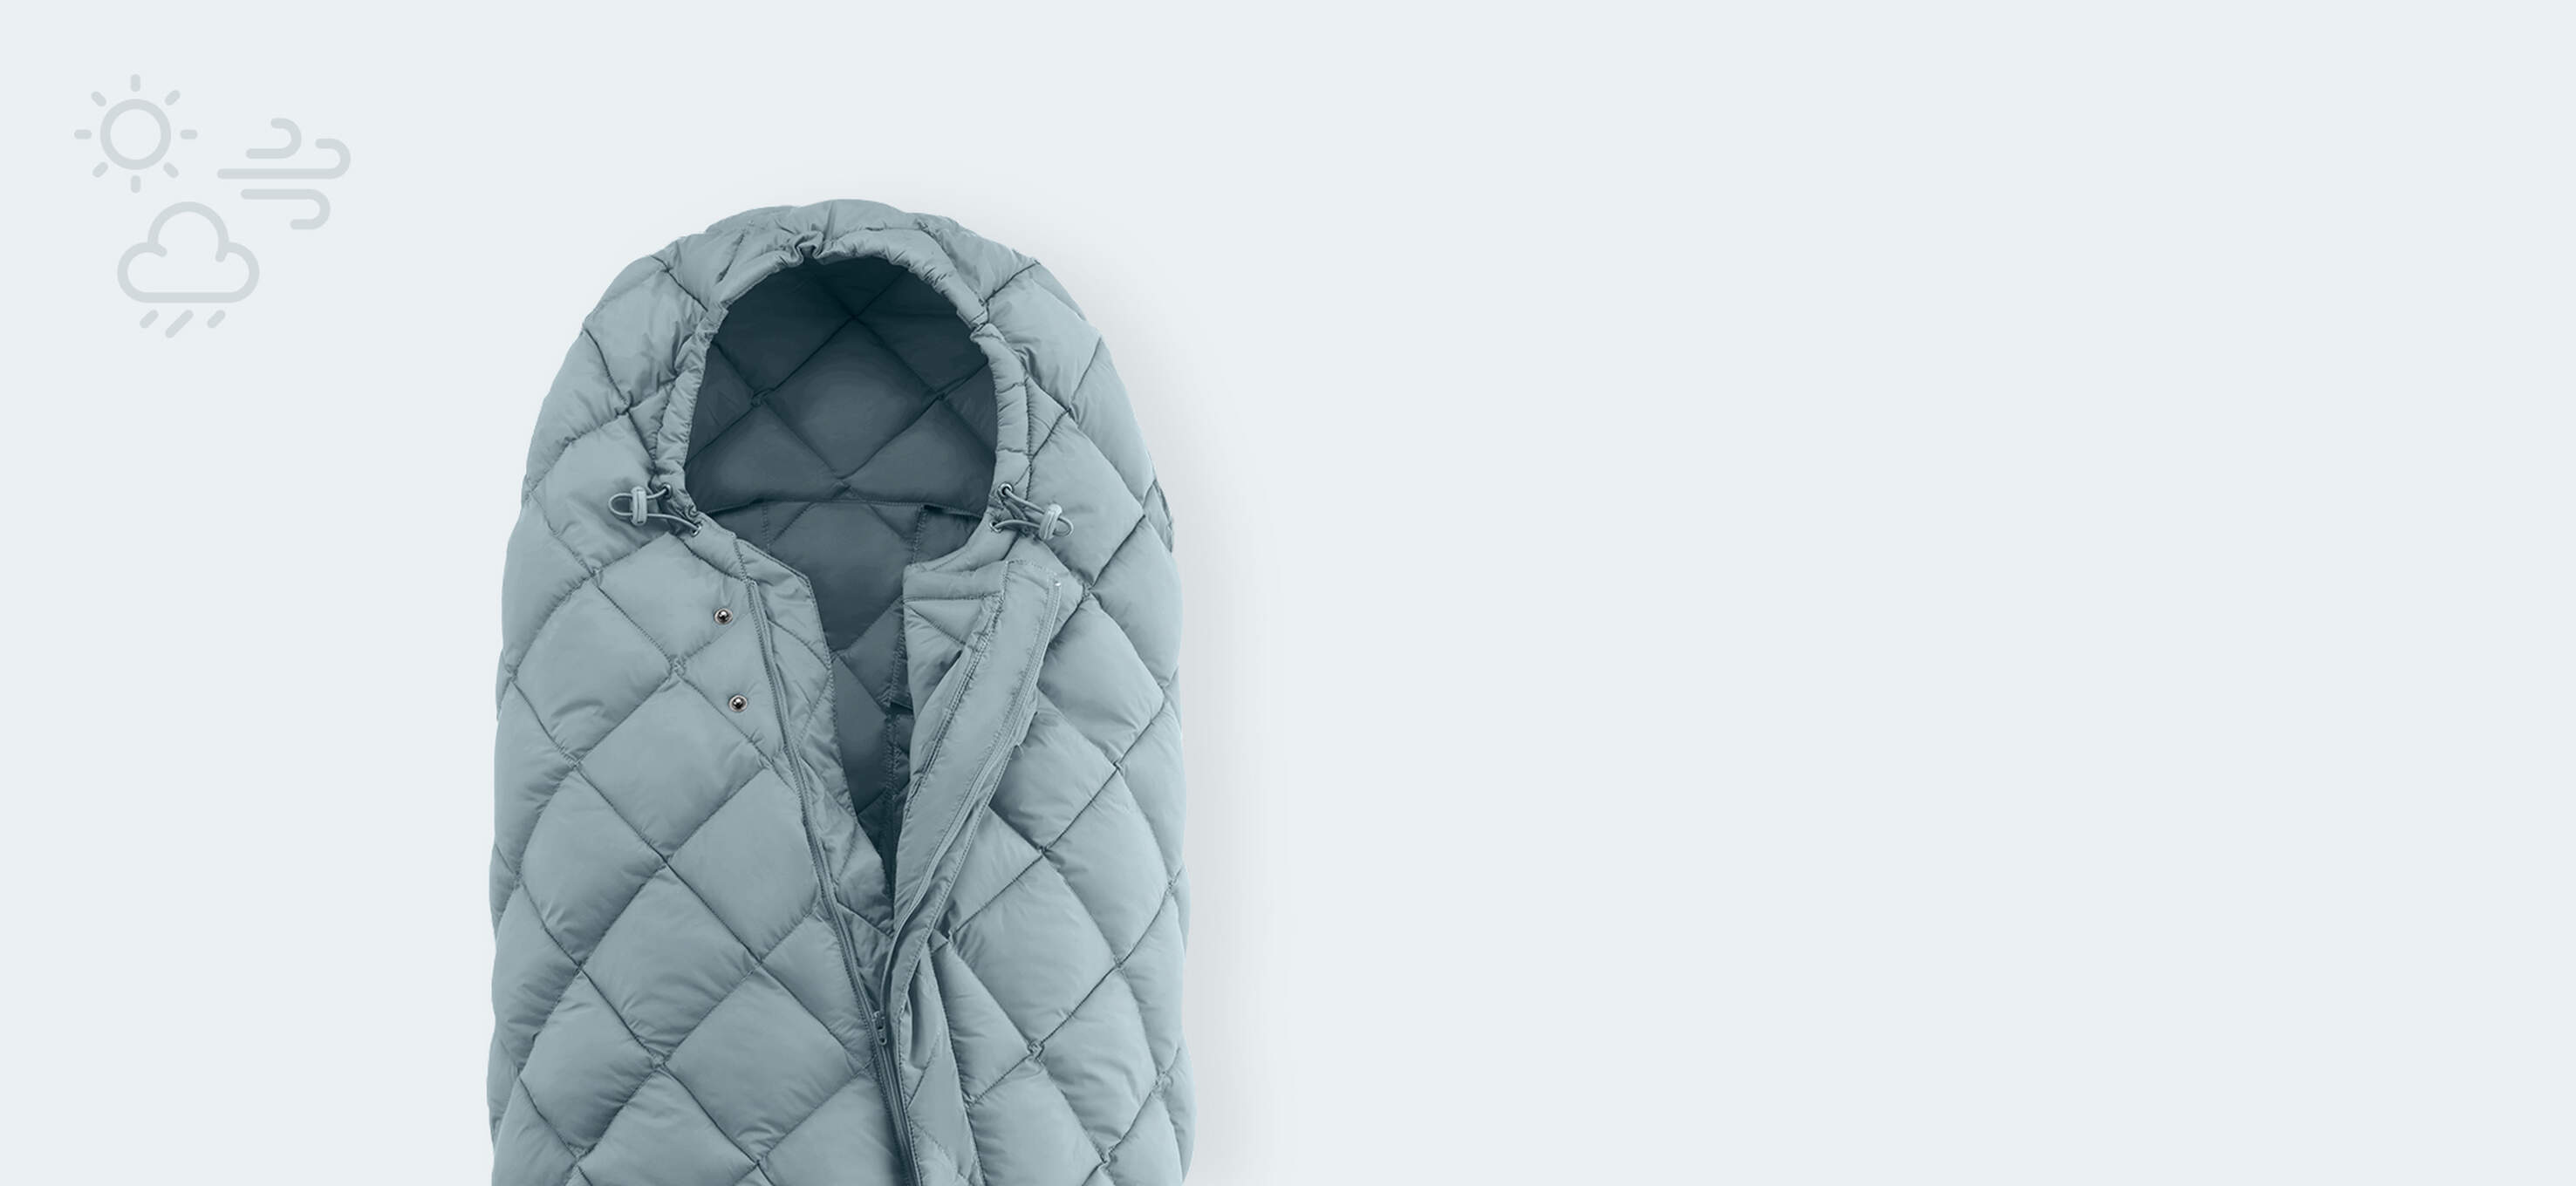 CYBEX - La chancelière Snøgga de CYBEX est facile à transporter et est  idéale pour l'hiver avec son rembourrage en Thinsulate ™ pour aider à  garder votre enfant au chaud. =>